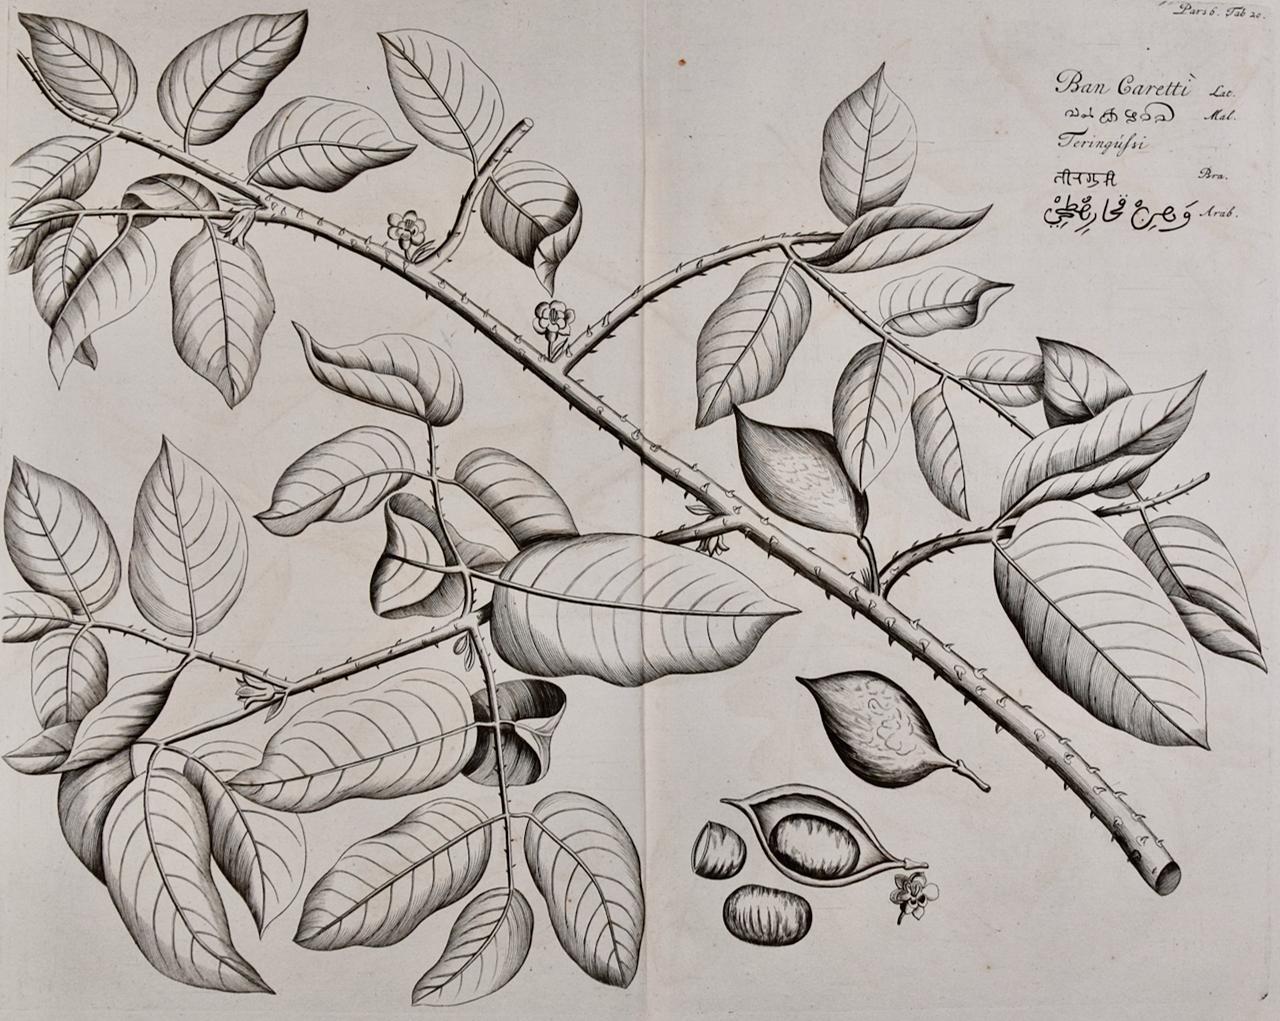 Hendrik Adriaan van Rheede tot Drakenstein Landscape Print - Fever Nut Plant "Ban Caretti": A 17th Century Engraving by Hendrik van Rheede